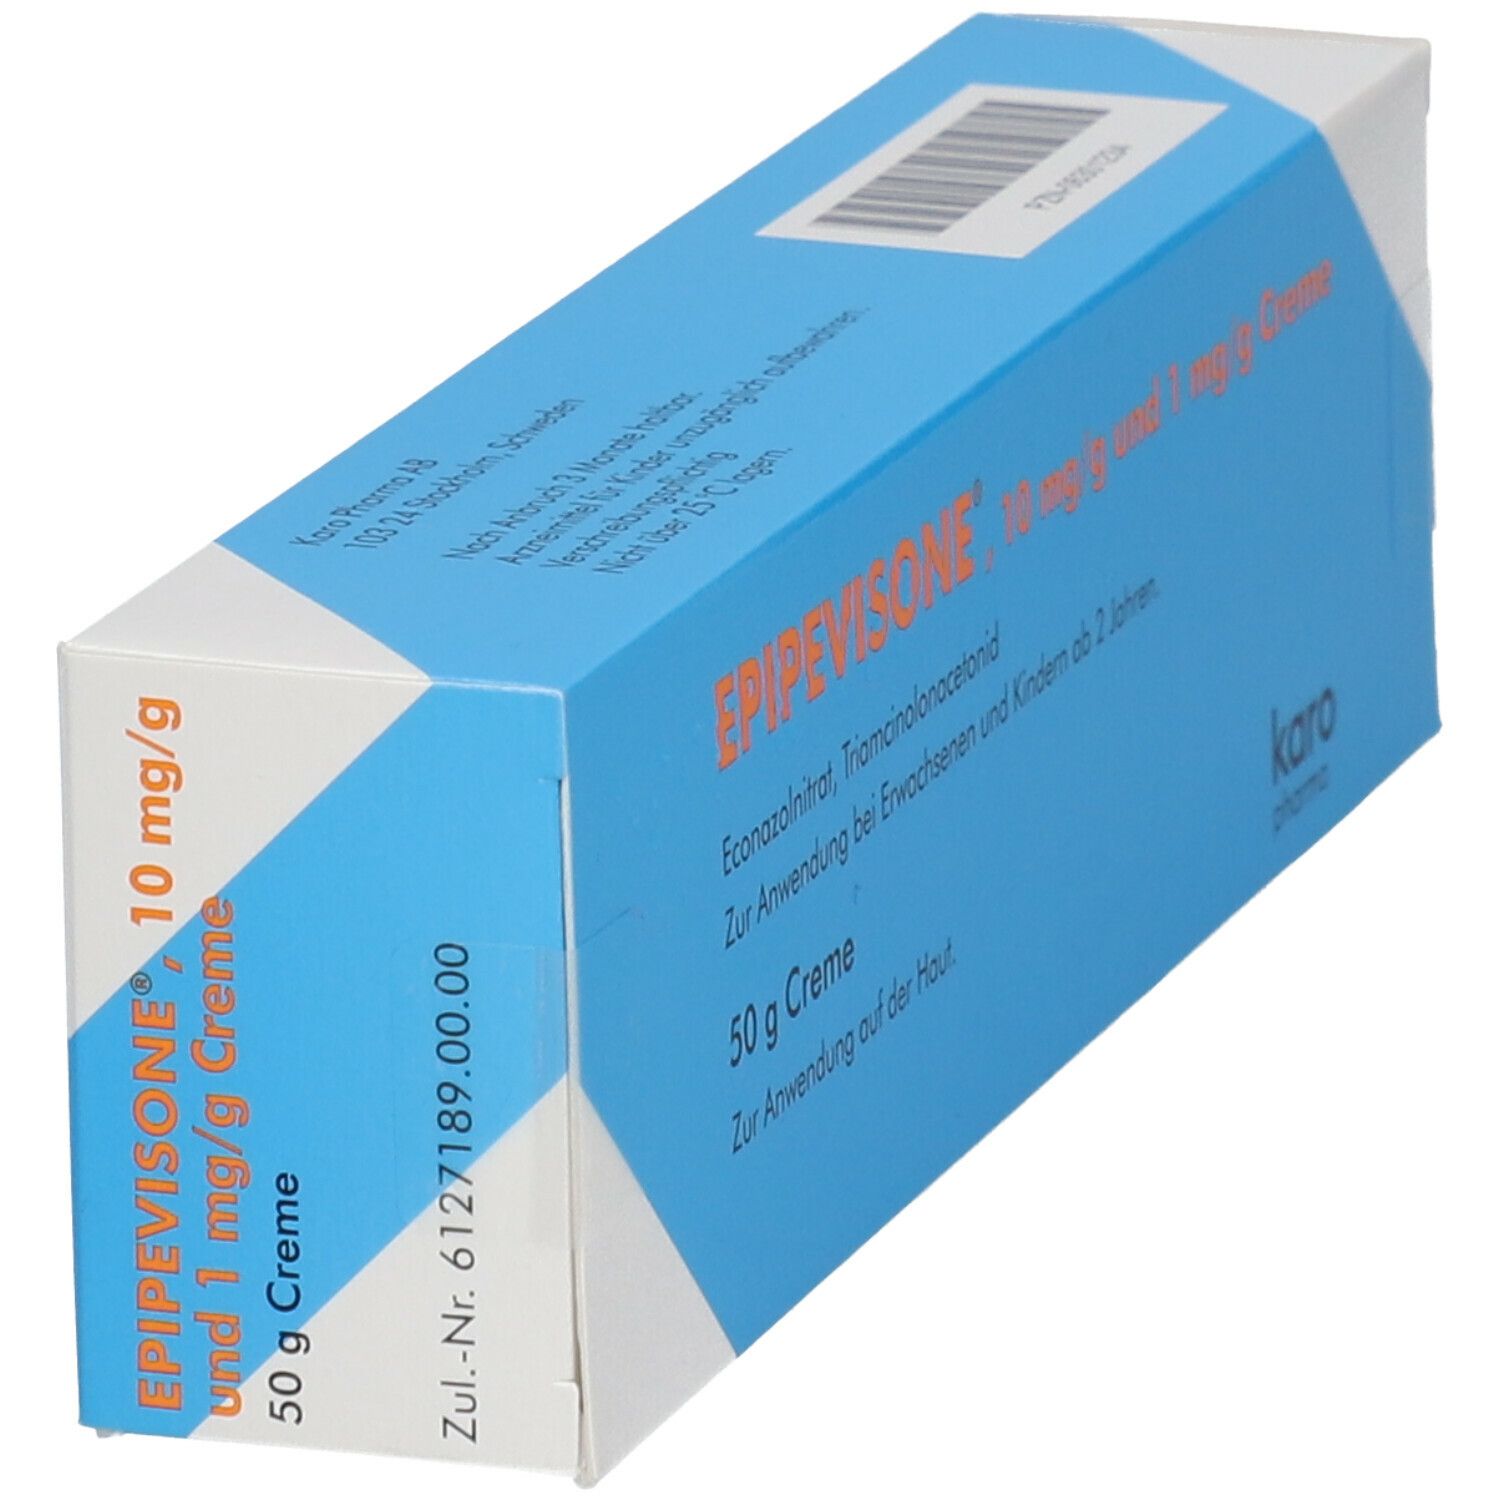 EPIPEVISONE® 10 mg/g und 1 mg/g